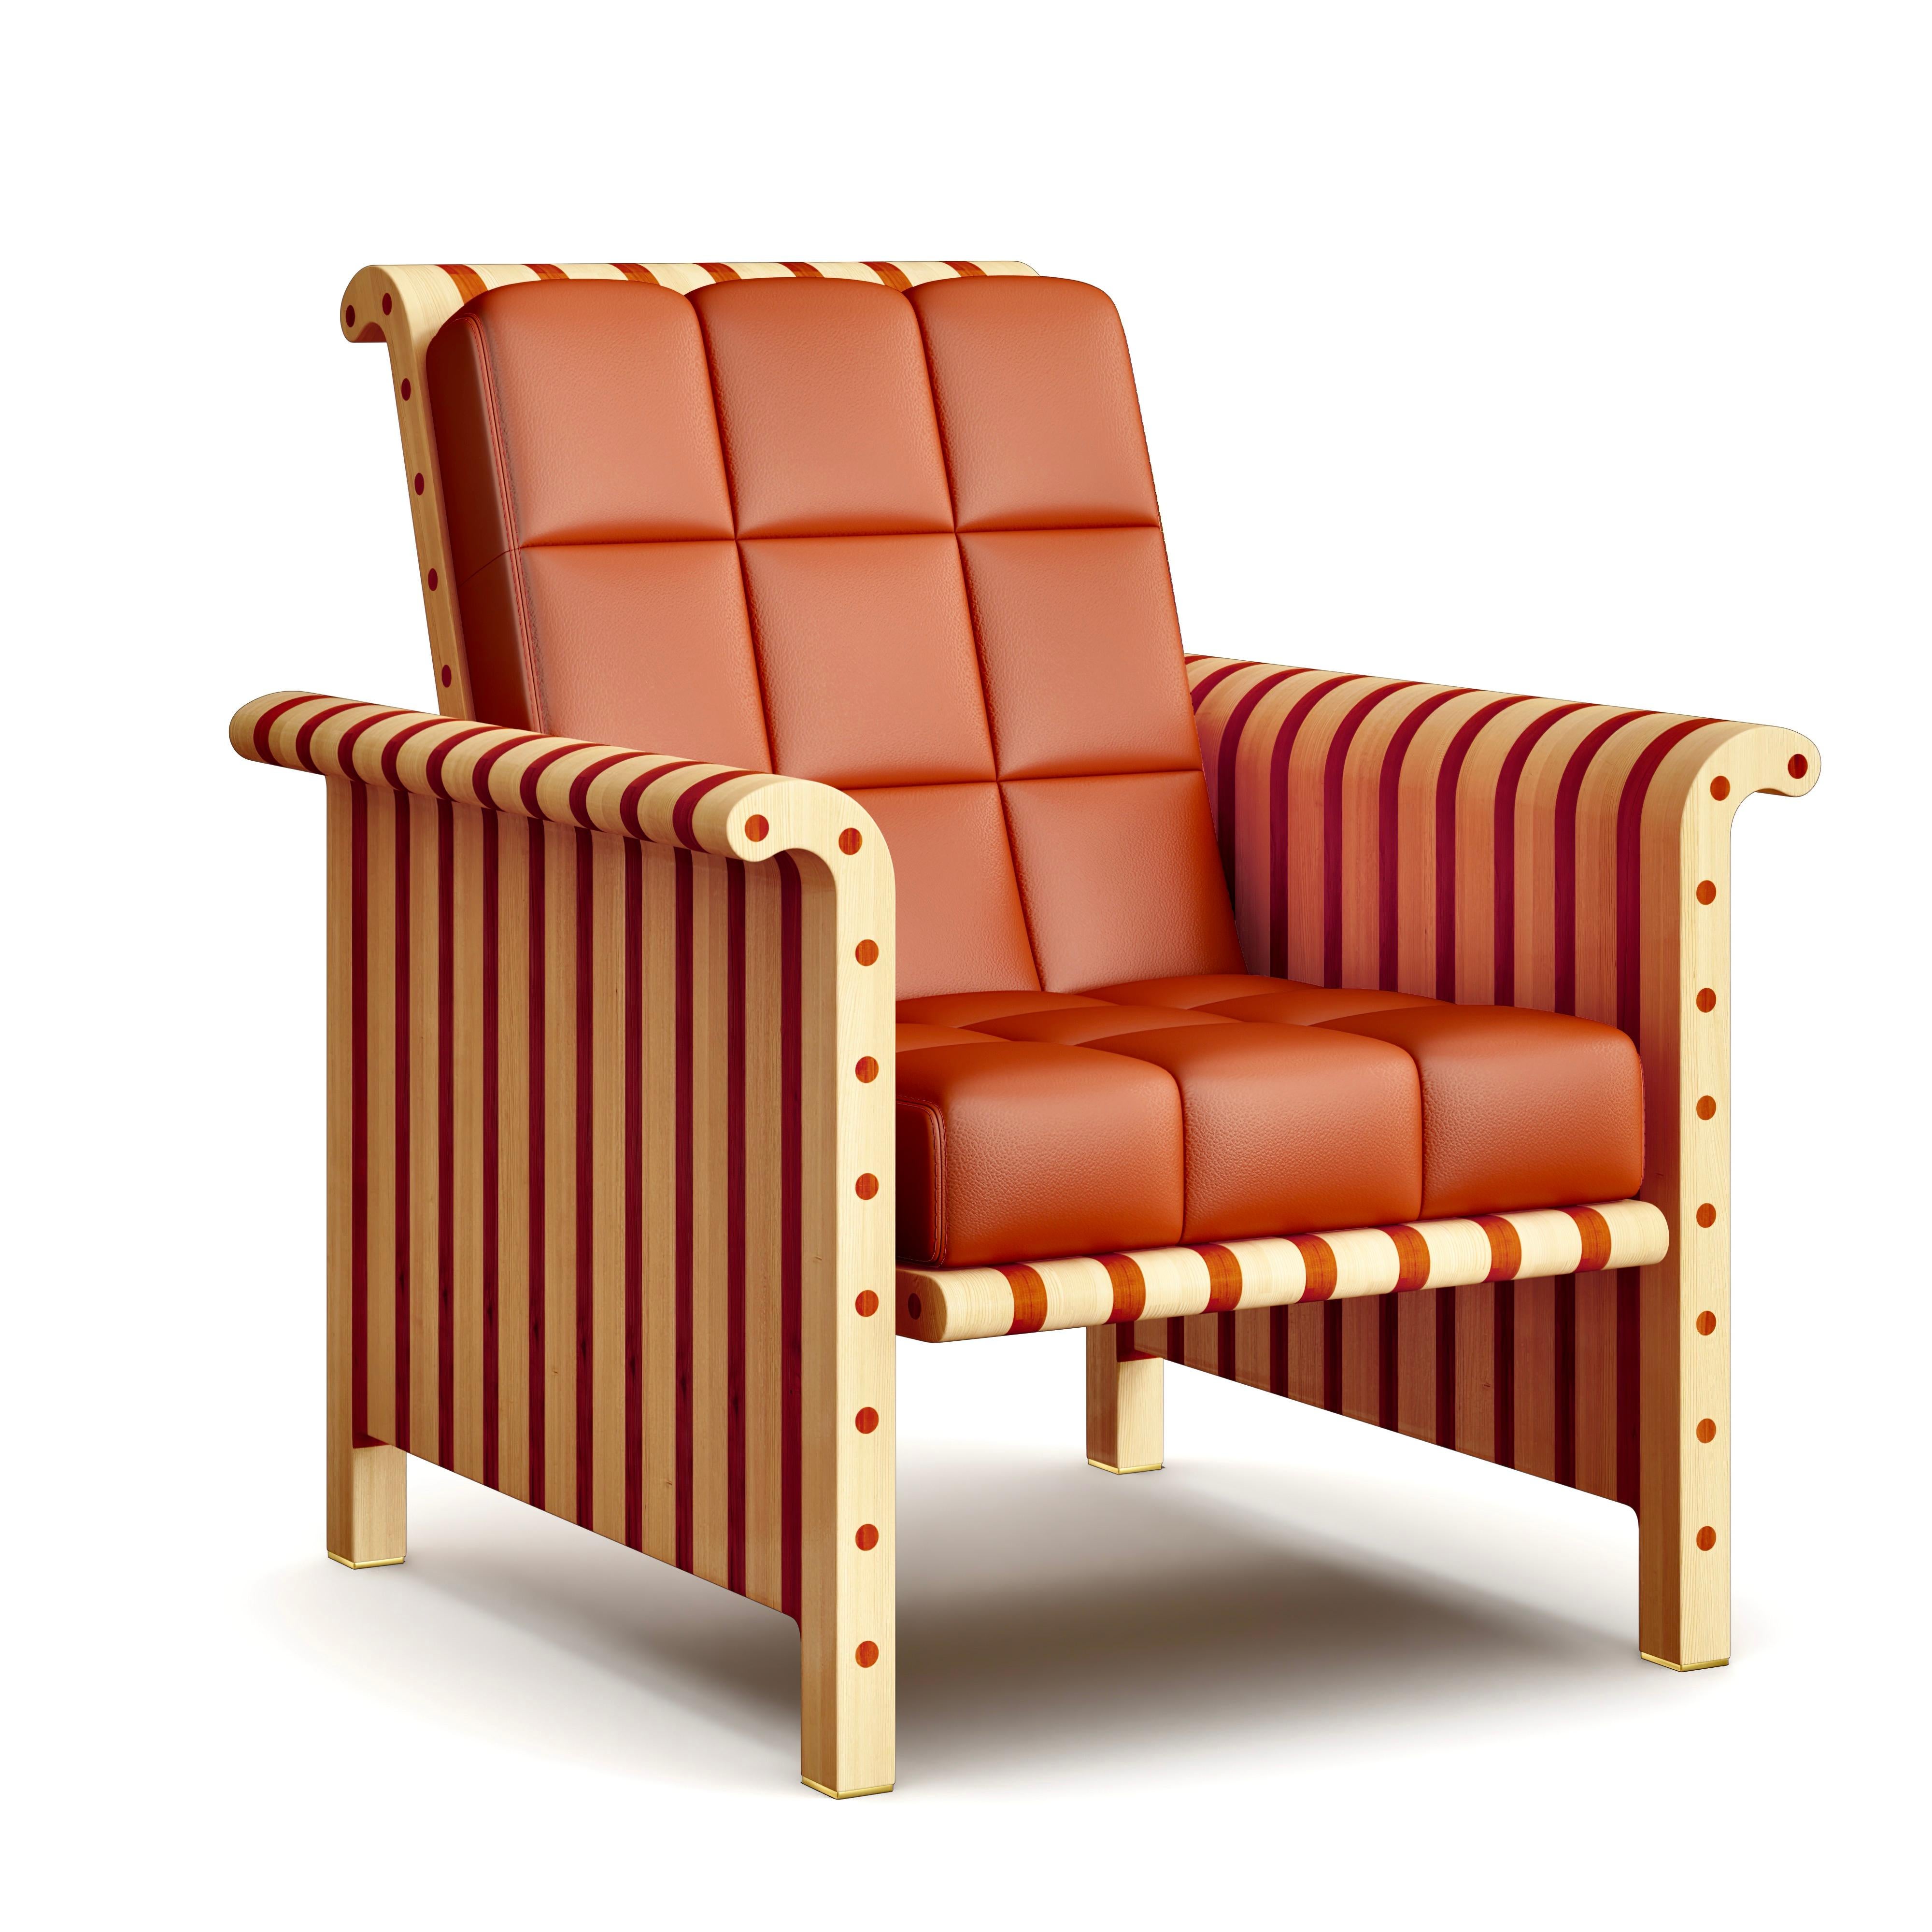 Cette superbe chaise longue fait partie de la série Striped de Troy Smith Studio.

Cette chaise longue est unique, originale et 100 % fabriquée à la main à partir de bois d'érable massif d'Amérique du Nord et de padauk d'Afrique. Il est doté d'une